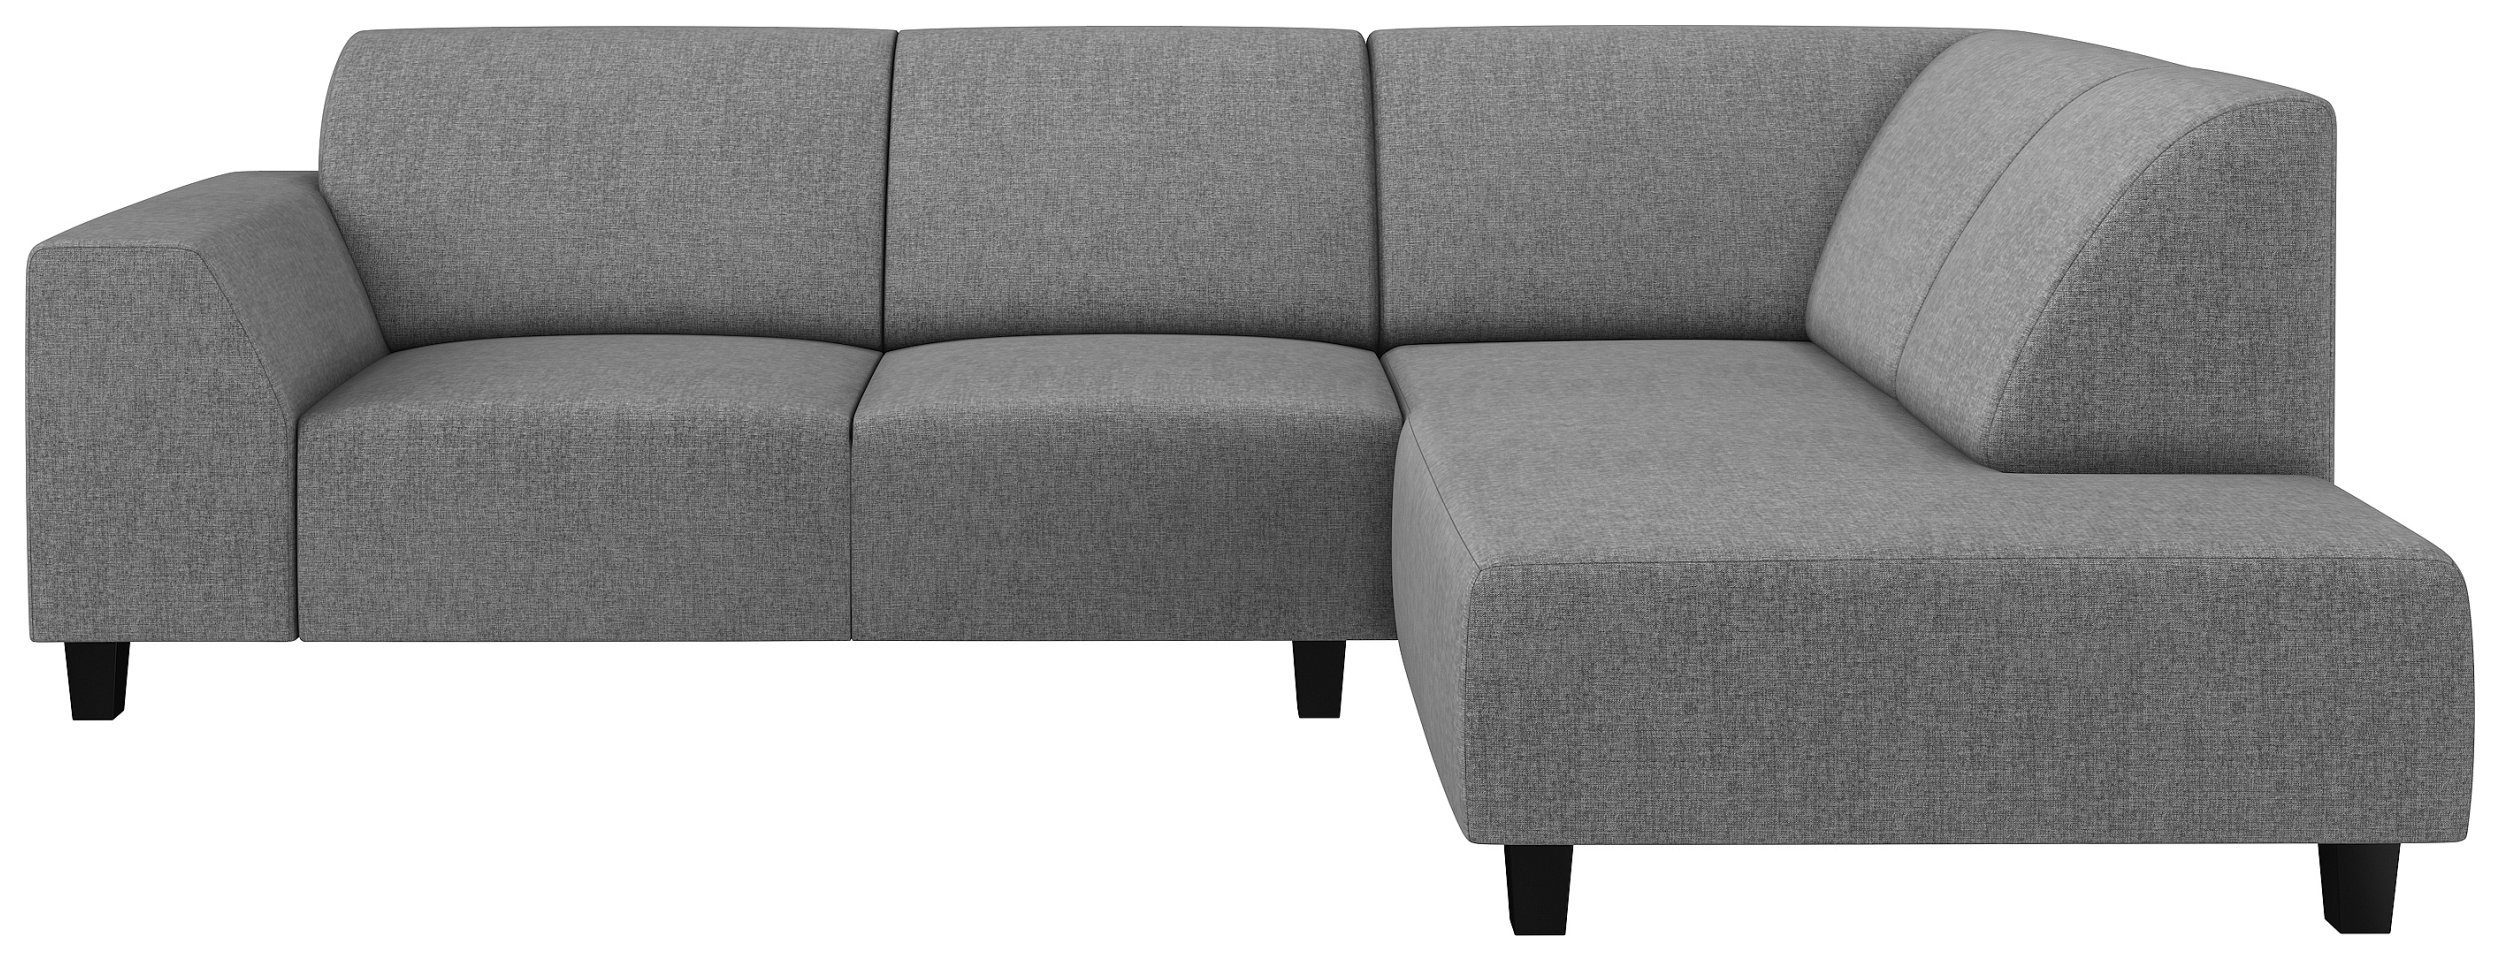 mane Ecksofa frei Stylefy Eckcouch, bestellbar, mit Raum Sitzkomfort, Design, Modern oder stellbar, rechts links Einar, im Rückenlehne L-Form,